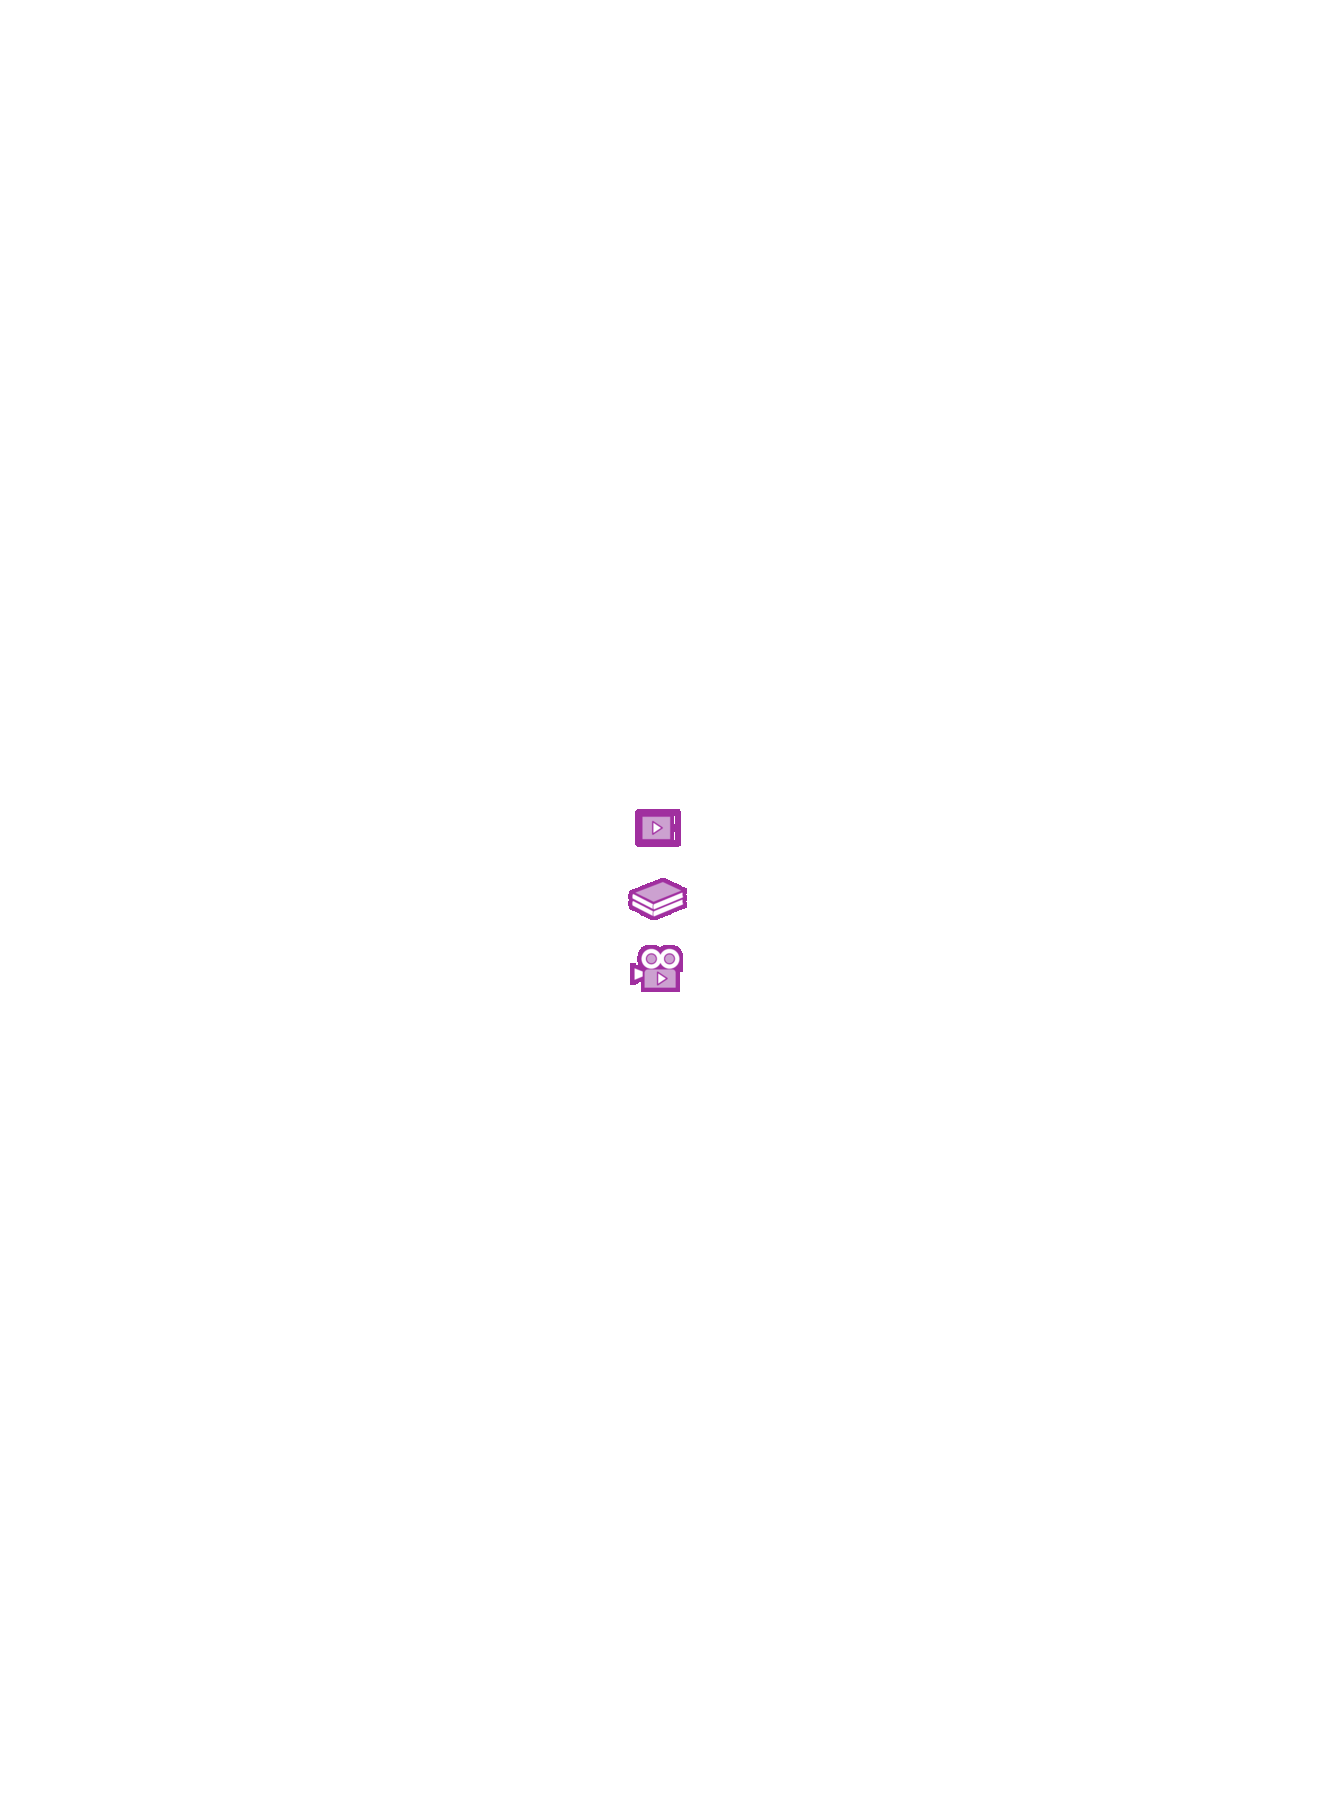 Ilustração de três ícones: dois livros empilhados indicando sugestão de livro, câmera filmadora com um triângulo indicando sugestão de vídeo, dispositivo eletrônico com um triângulo na tela indicando sugestão de site.